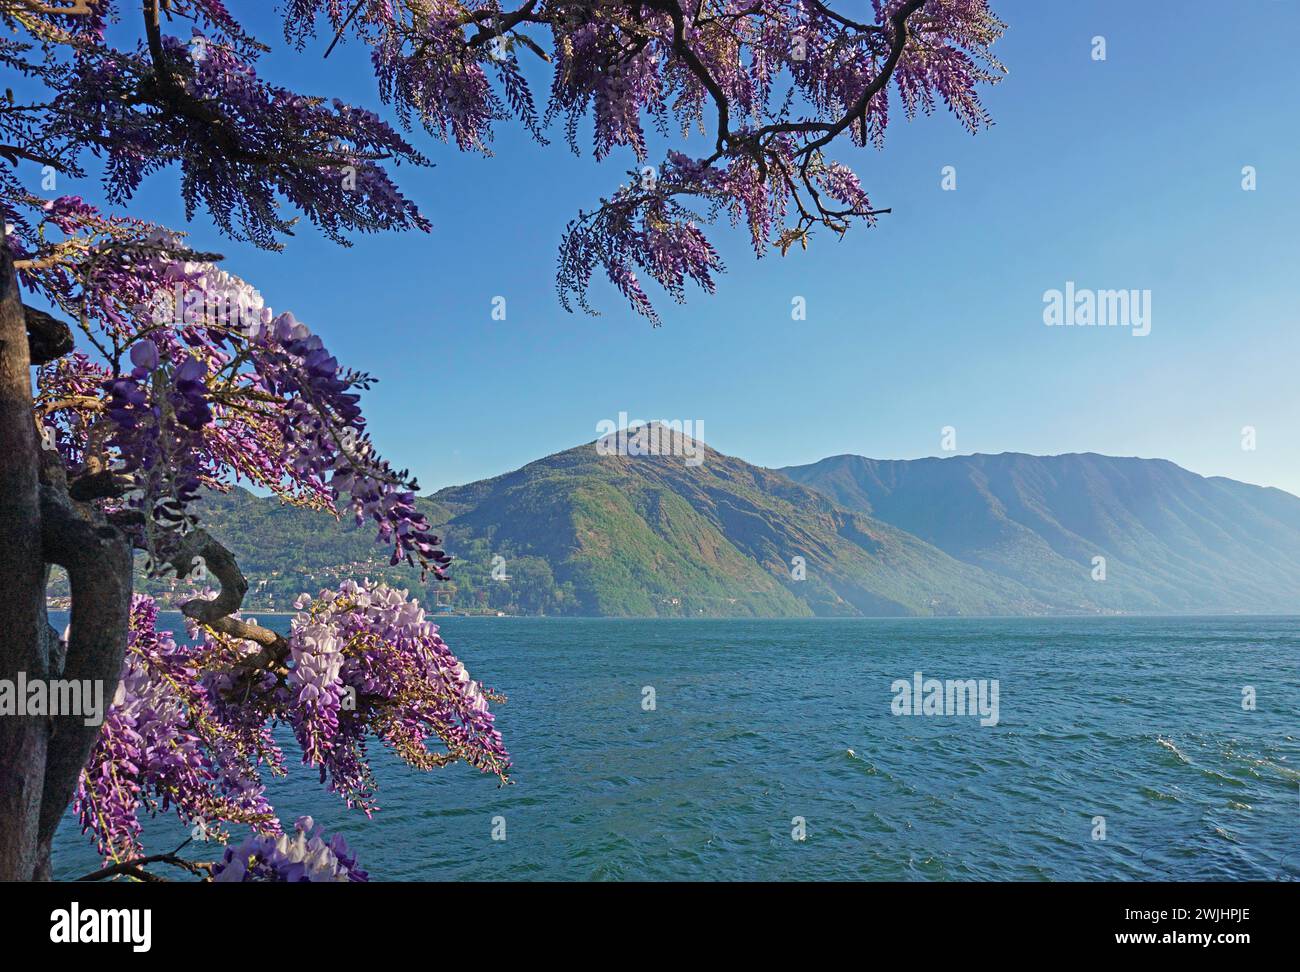 Flowering blue rain, Wisteria, Lago di Como, Tremezzo, Lake Como, Lombardy, Italy Stock Photo